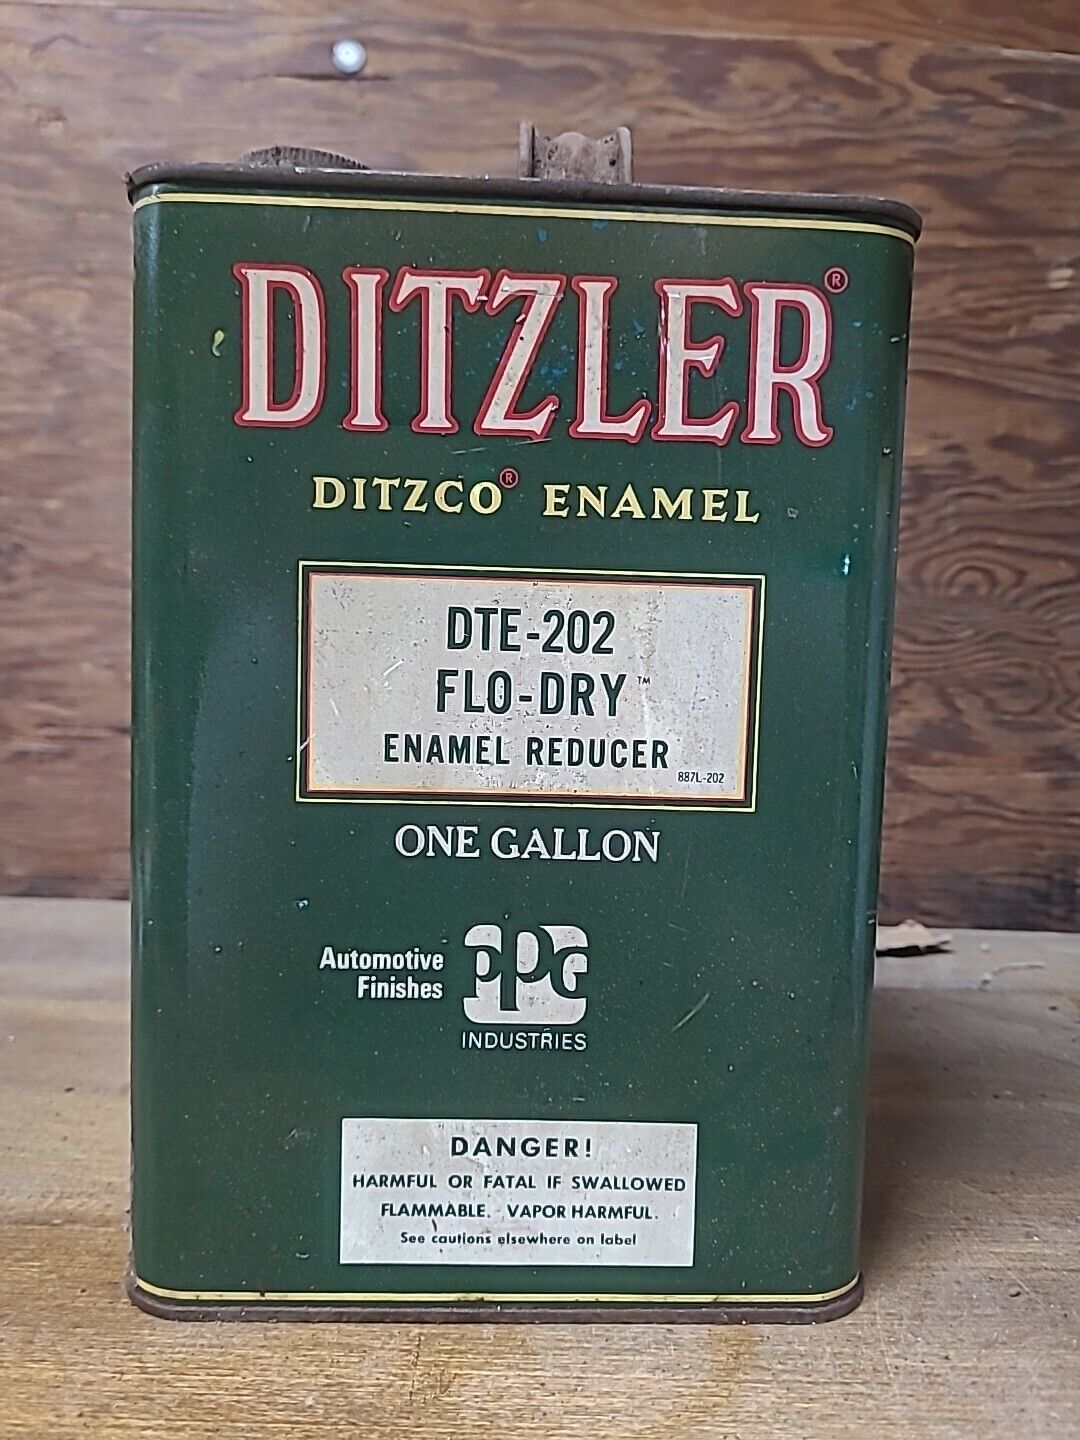 VTG Ditzler Ditzco Enamel Reducer 1 Gallon DTE-202 Flo-Dry Can Half Full